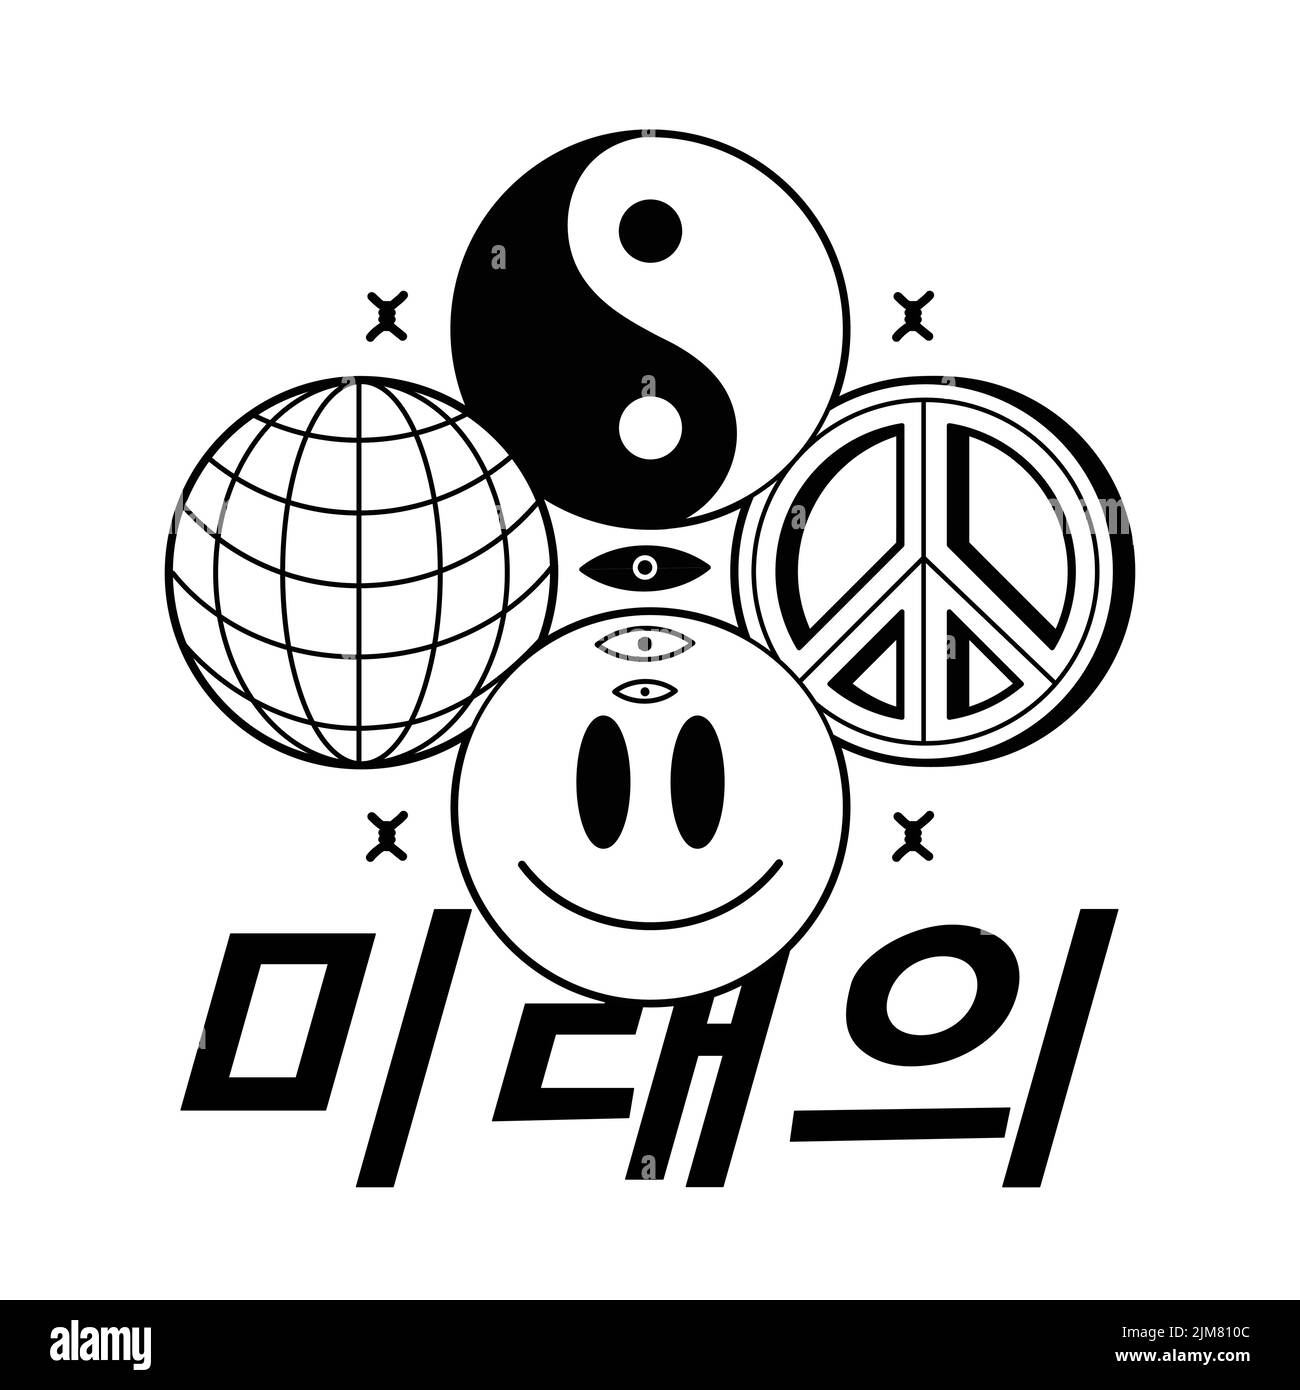 Traduzione:'Future'.Yin Yang,sphere,smile face,peace signs.Vector line illustrazione grafica logo design.Yin yang,Earth sphere,smile face,hippie peace symbol,techno,glitch print for t-shirt,poster art Illustrazione Vettoriale